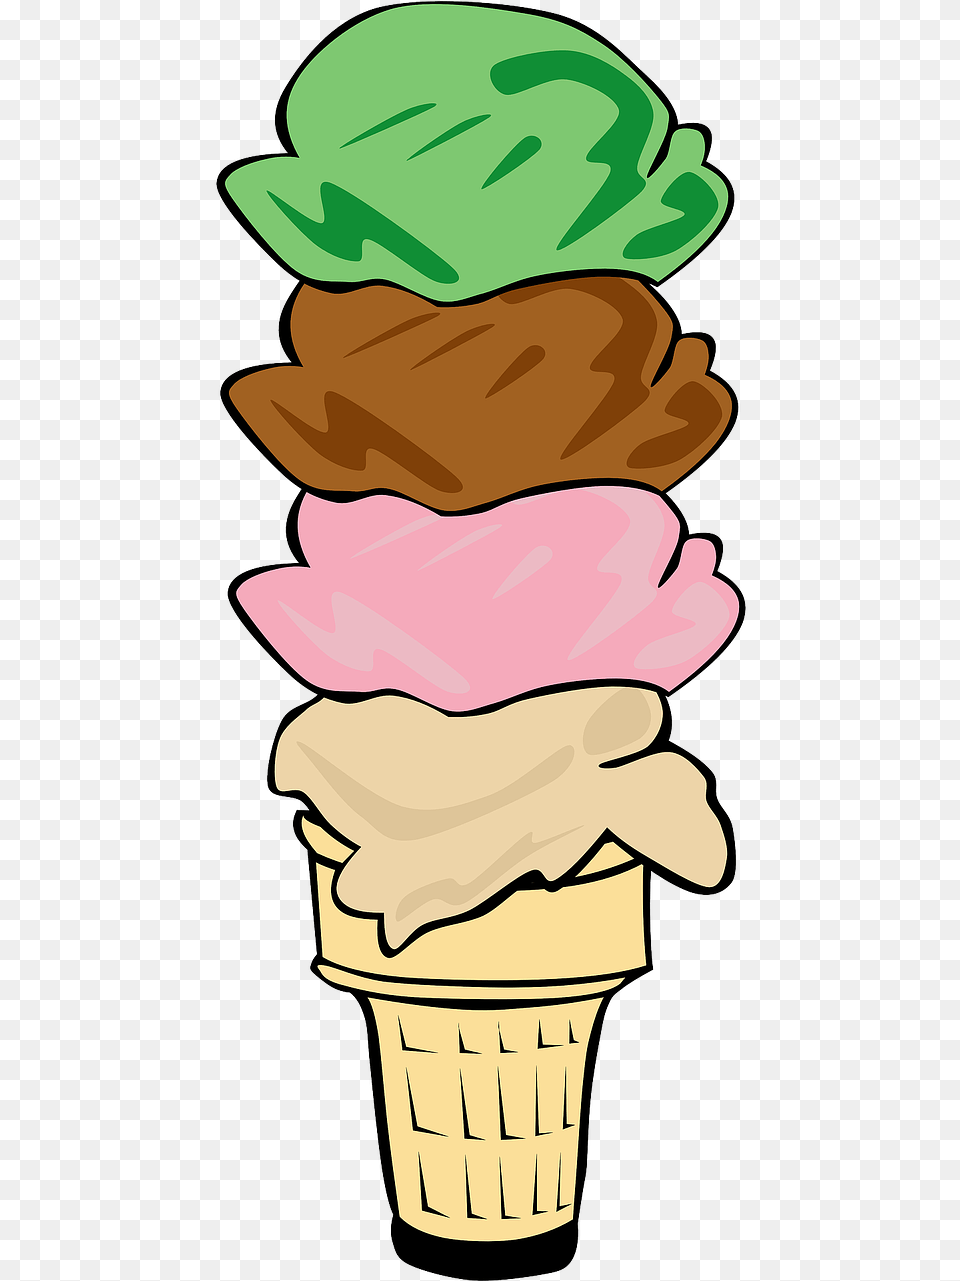 Cartoonclip Ice Cream Cone Clip Art, Dessert, Food, Ice Cream, Soft Serve Ice Cream Png